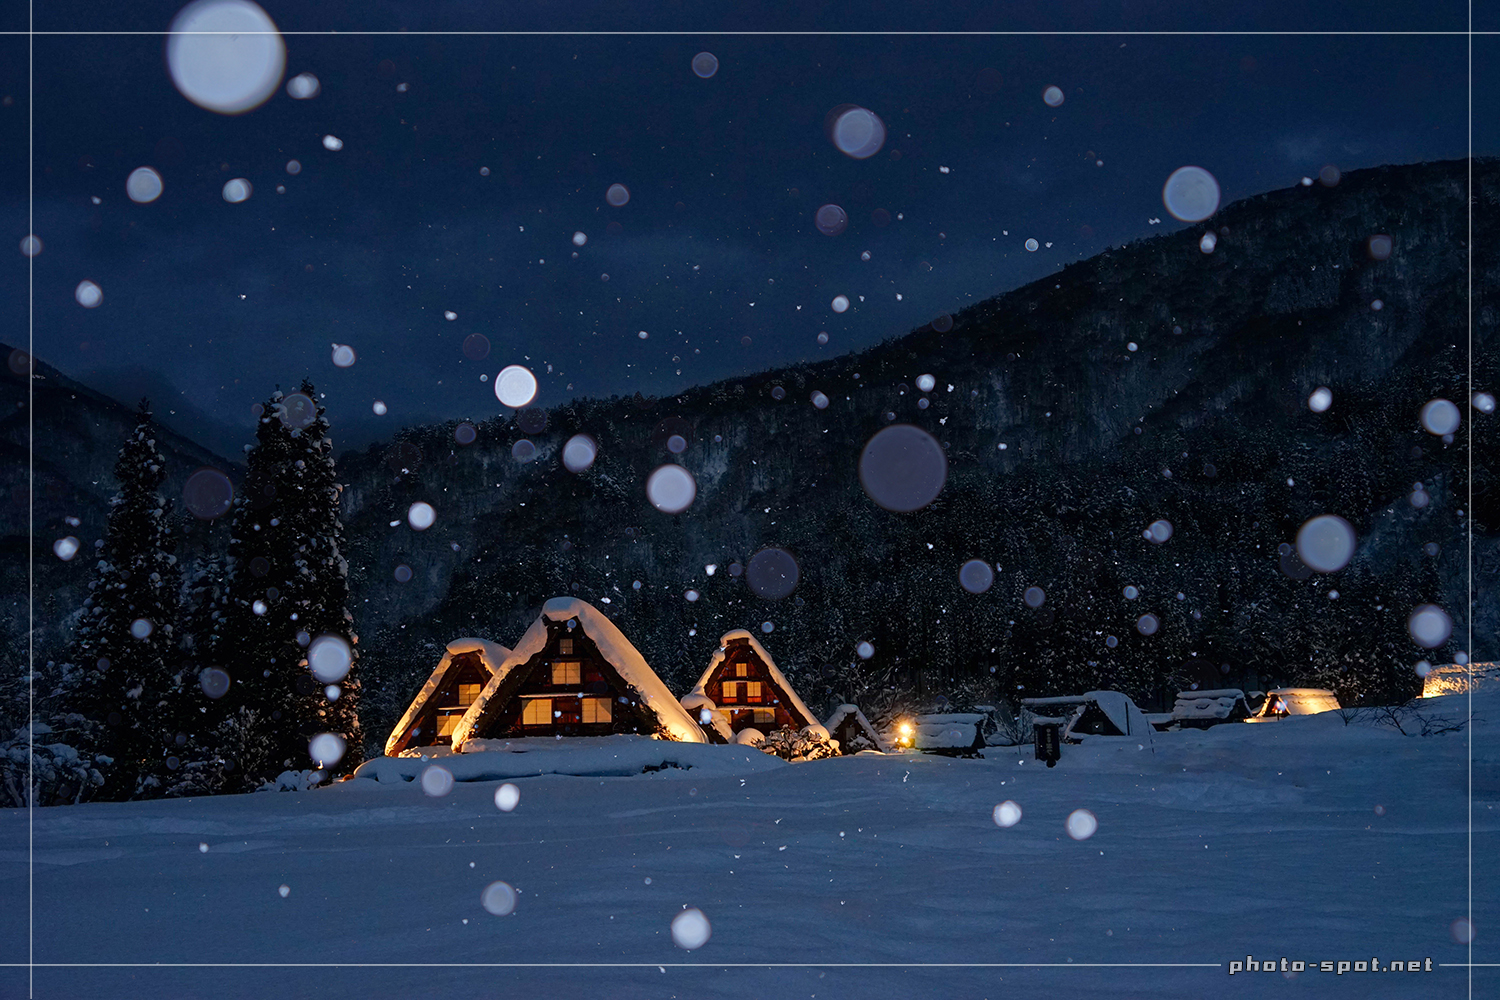 雪の白川郷ライトアップ 三小屋（三連合掌）で雪の玉ボケ写真撮影